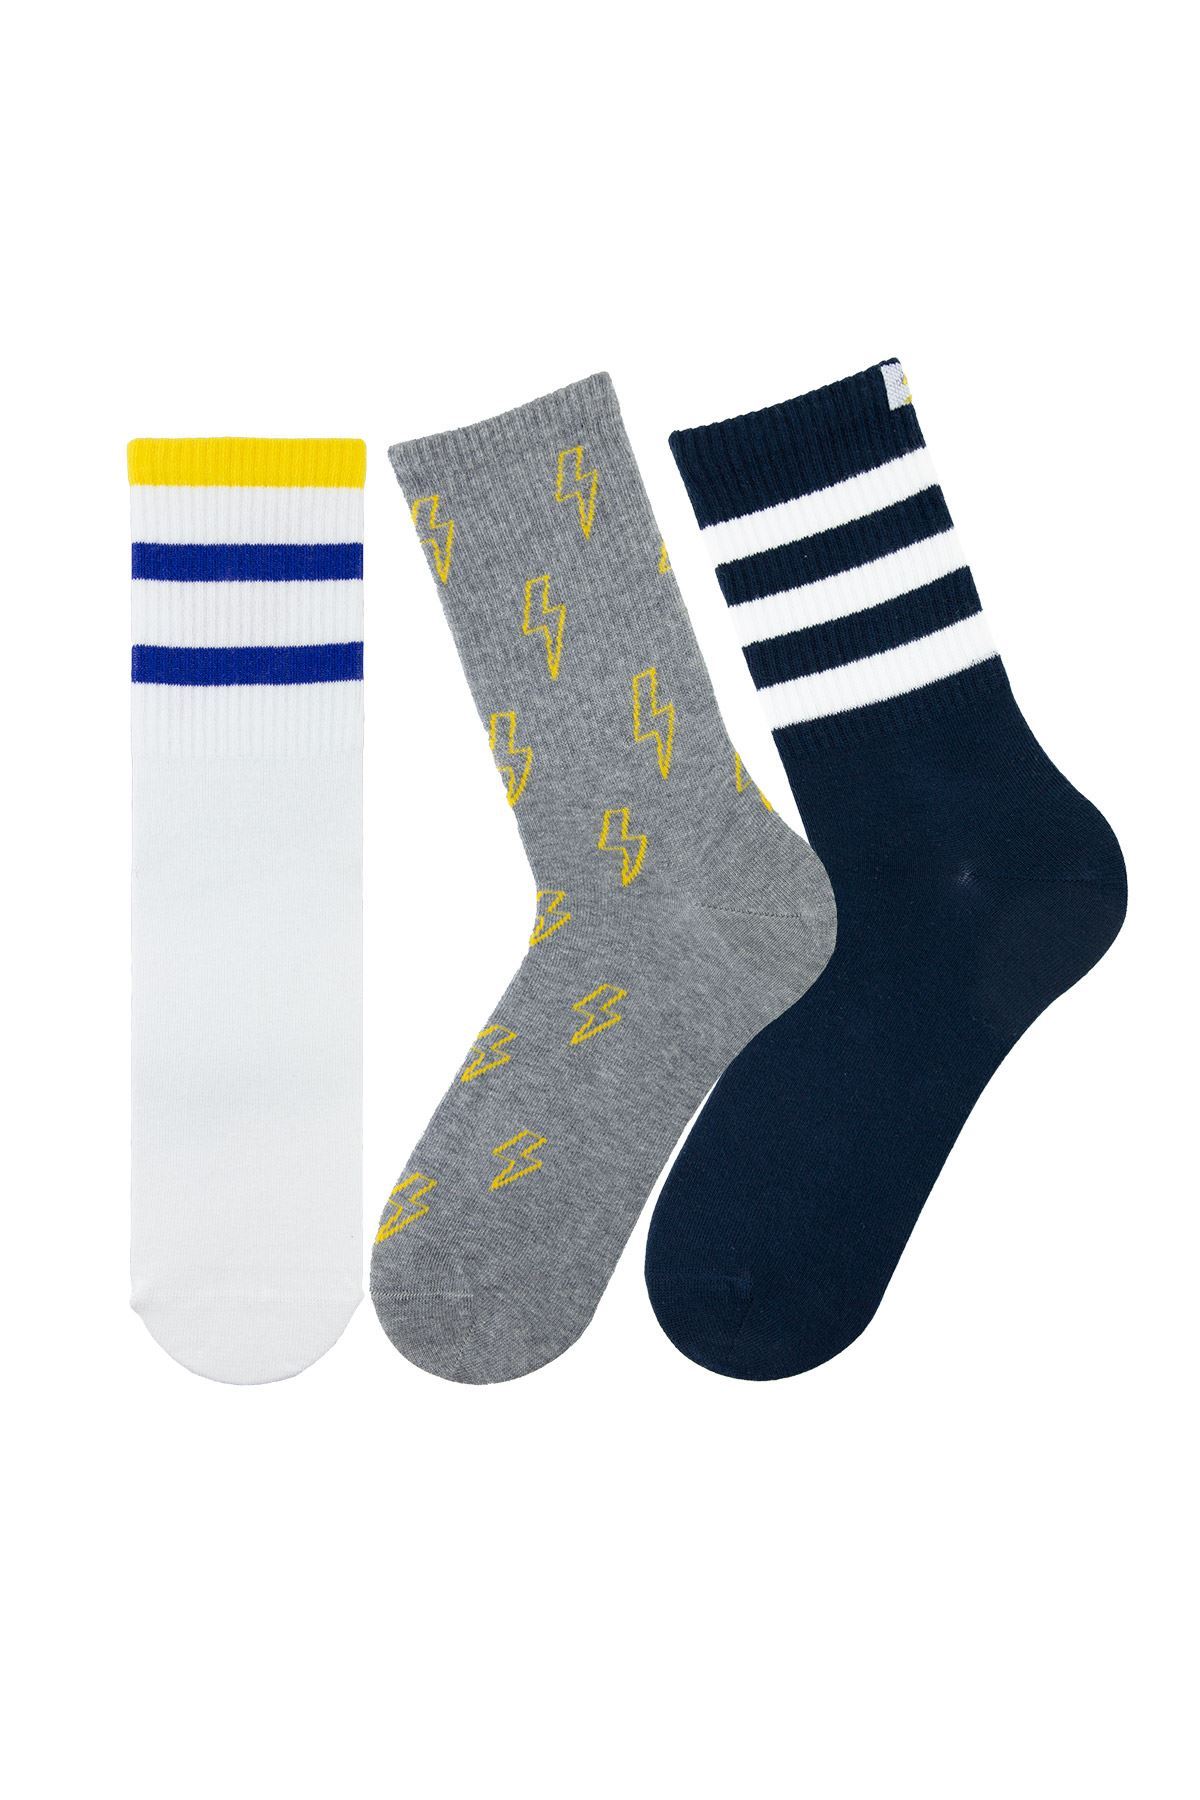 MAN MID-CALF SOCKS SPORT FLASH PATTERNED Buy Branded Wholesale Socks Online At Bulkybross!